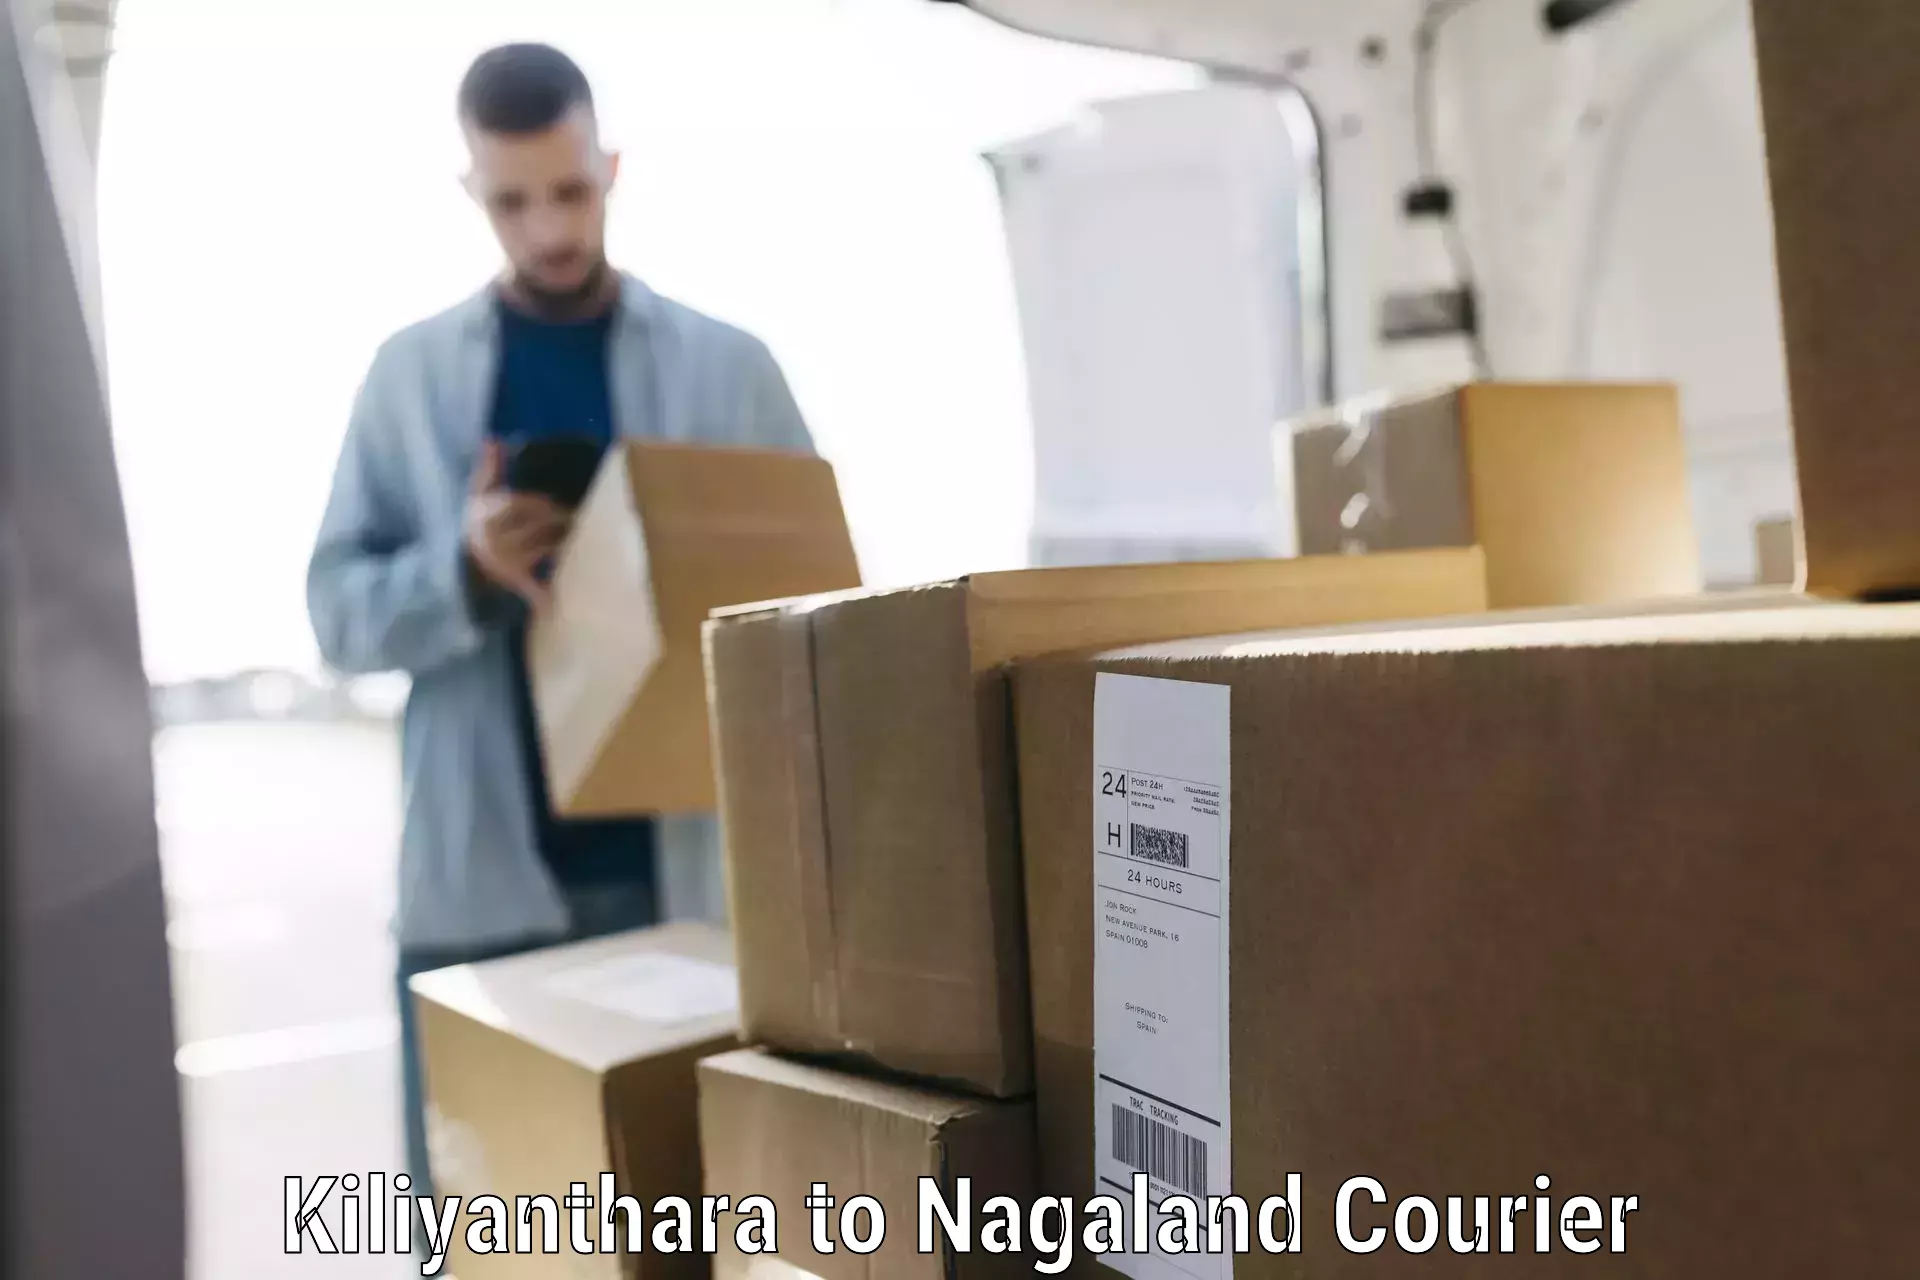 Baggage relocation service Kiliyanthara to Nagaland